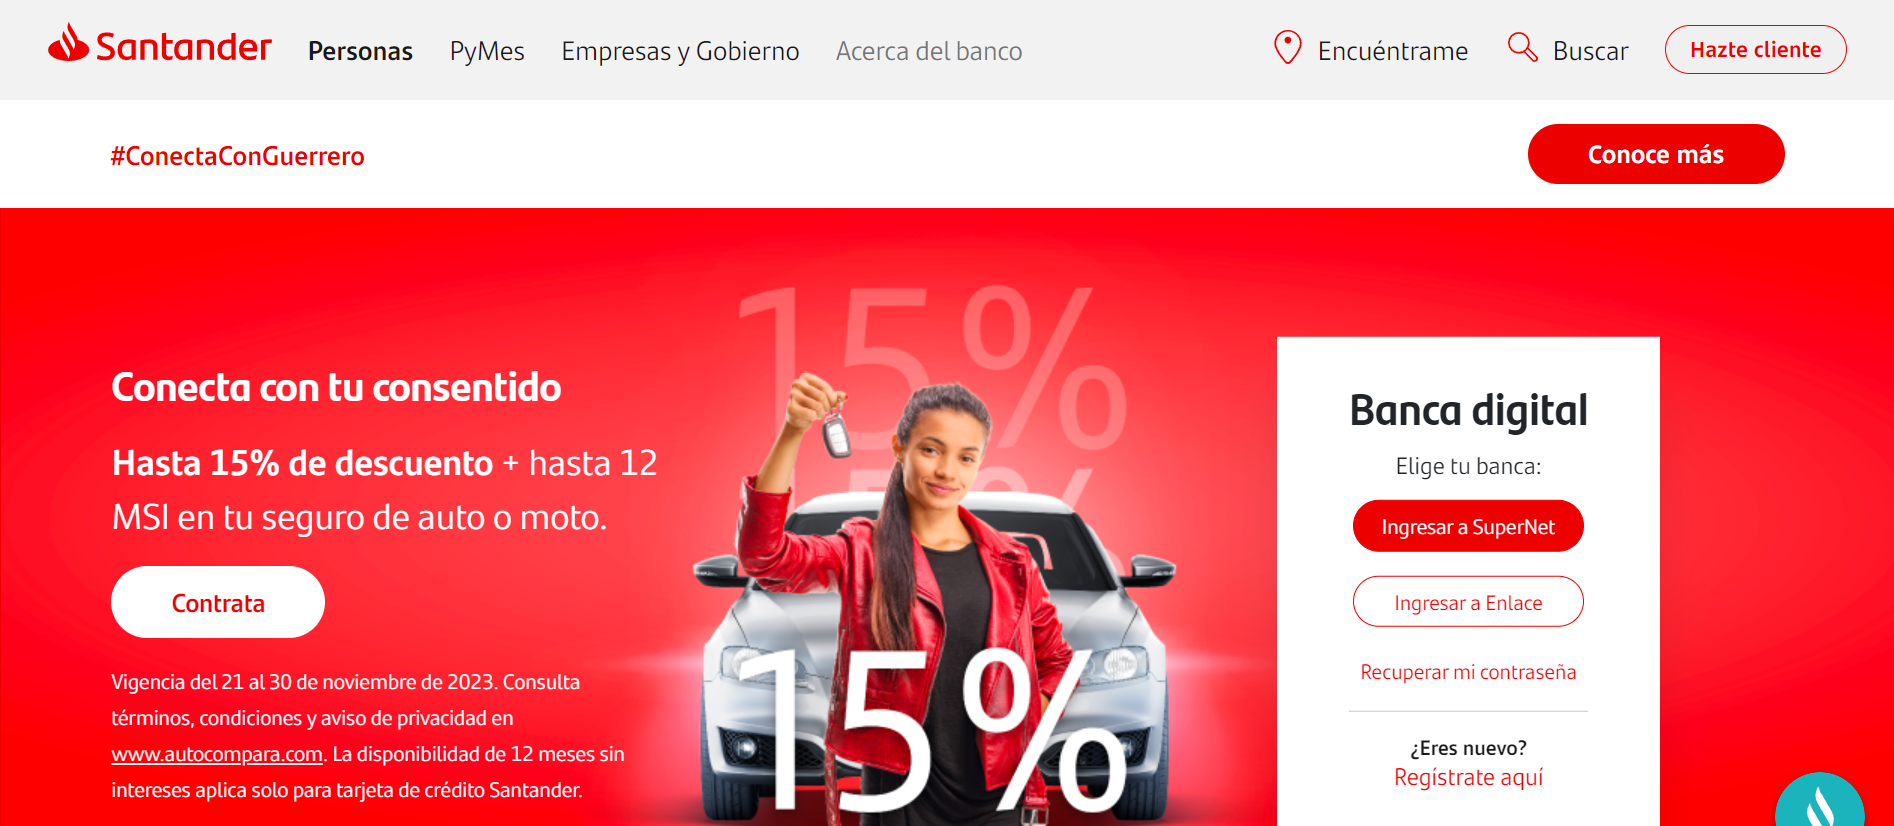 Qué es dinero creciente Santander